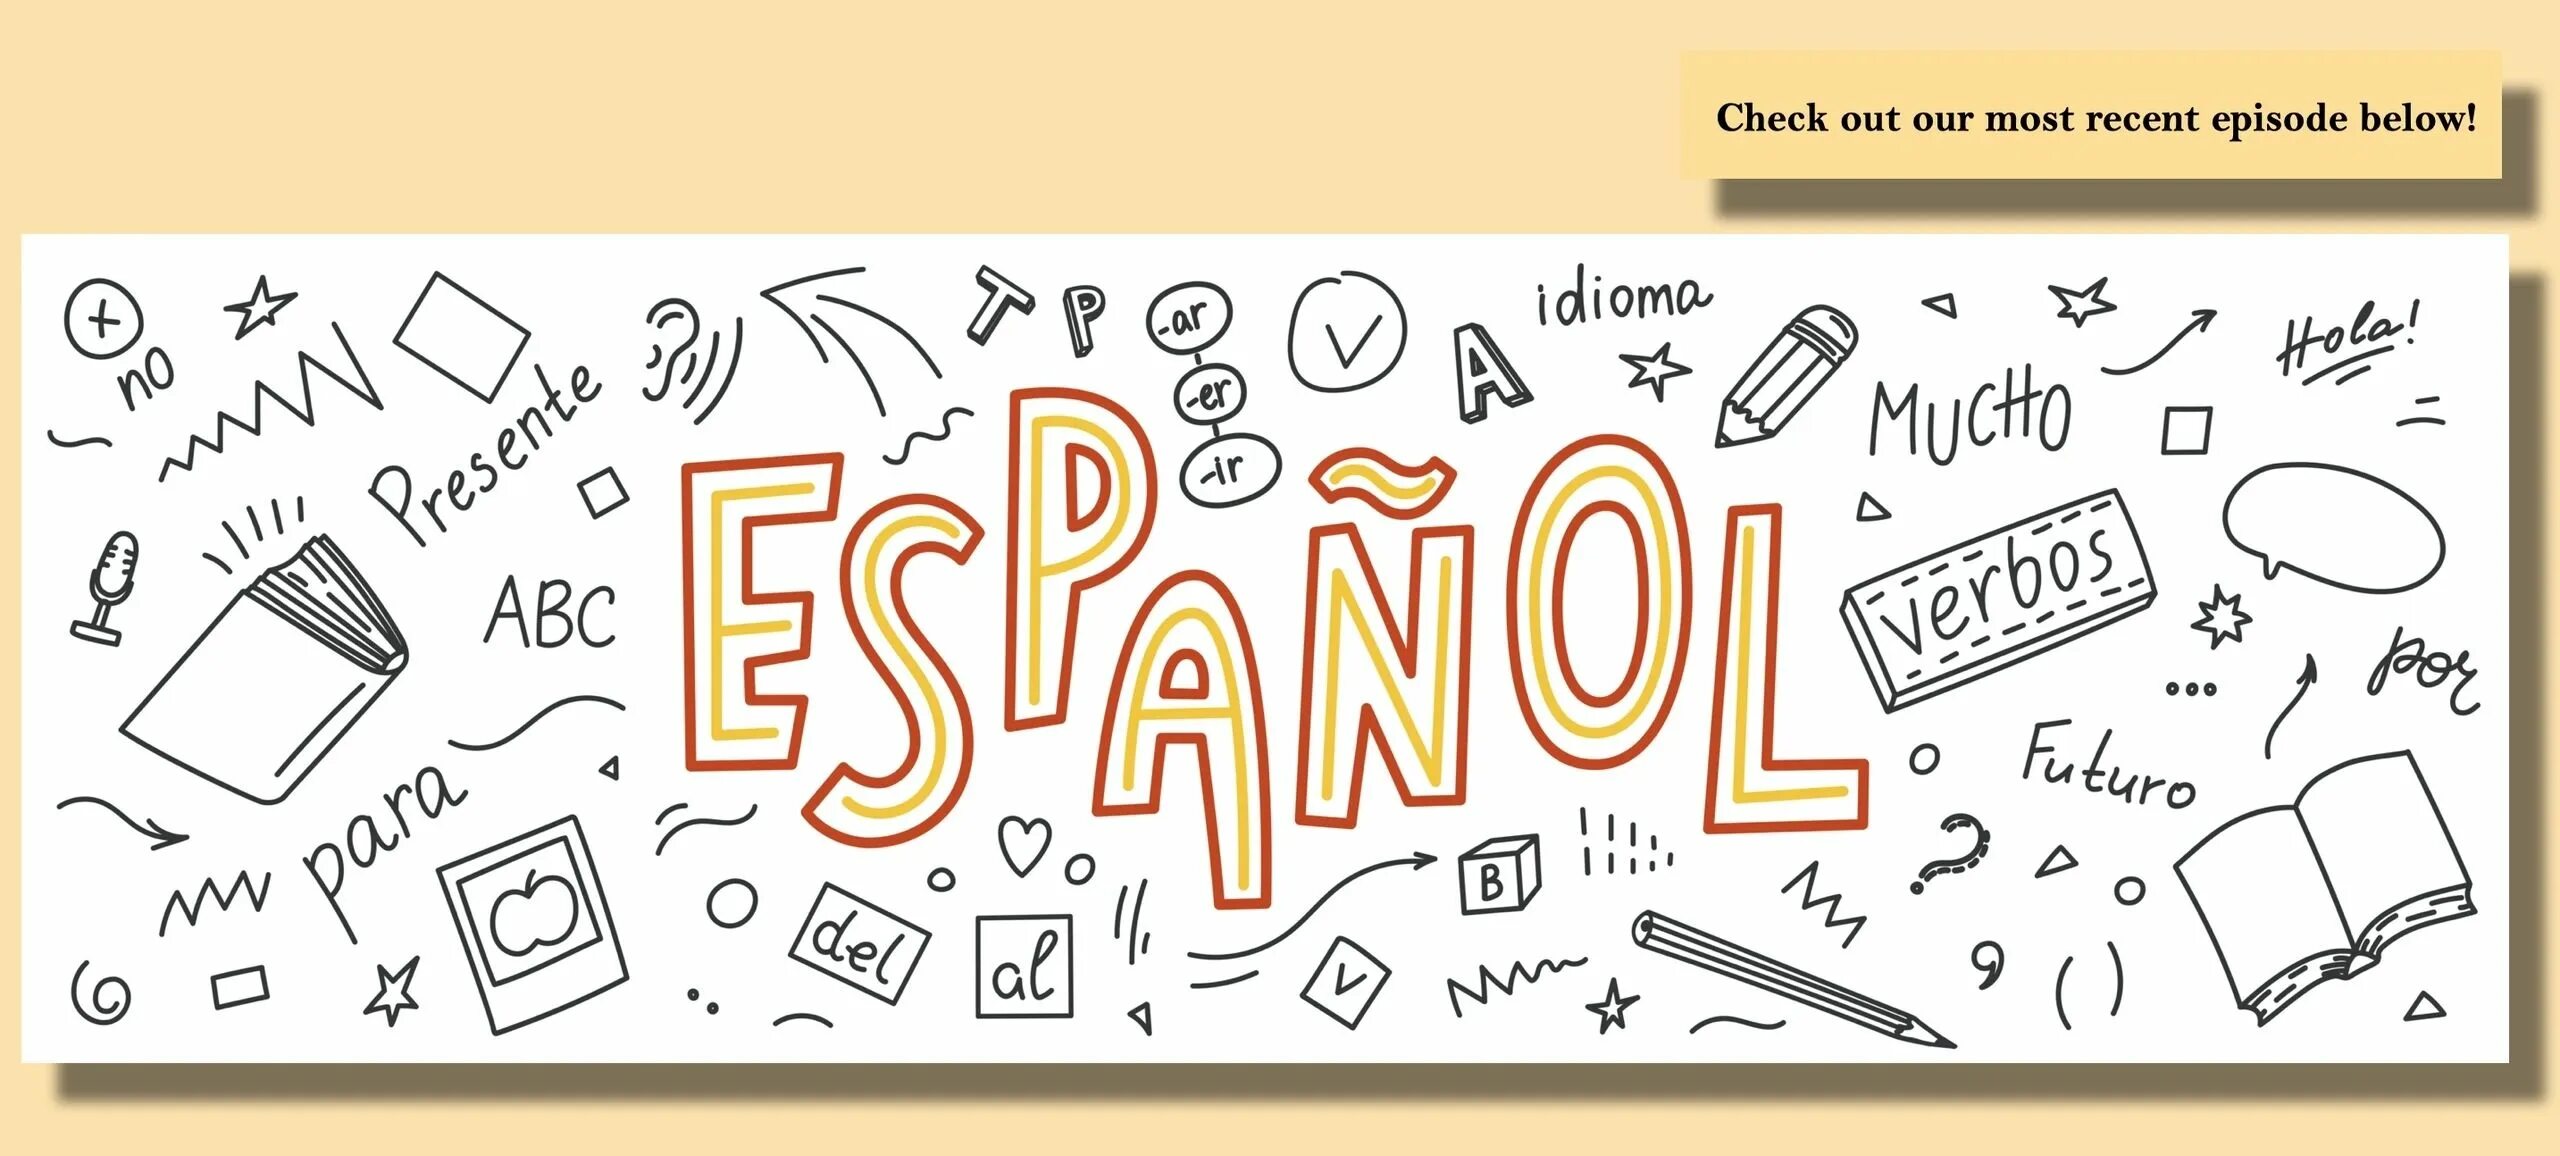 Espanol. Испанский язык чб. Надпись испанский язык. Испанский язык картинки для оформления текста.